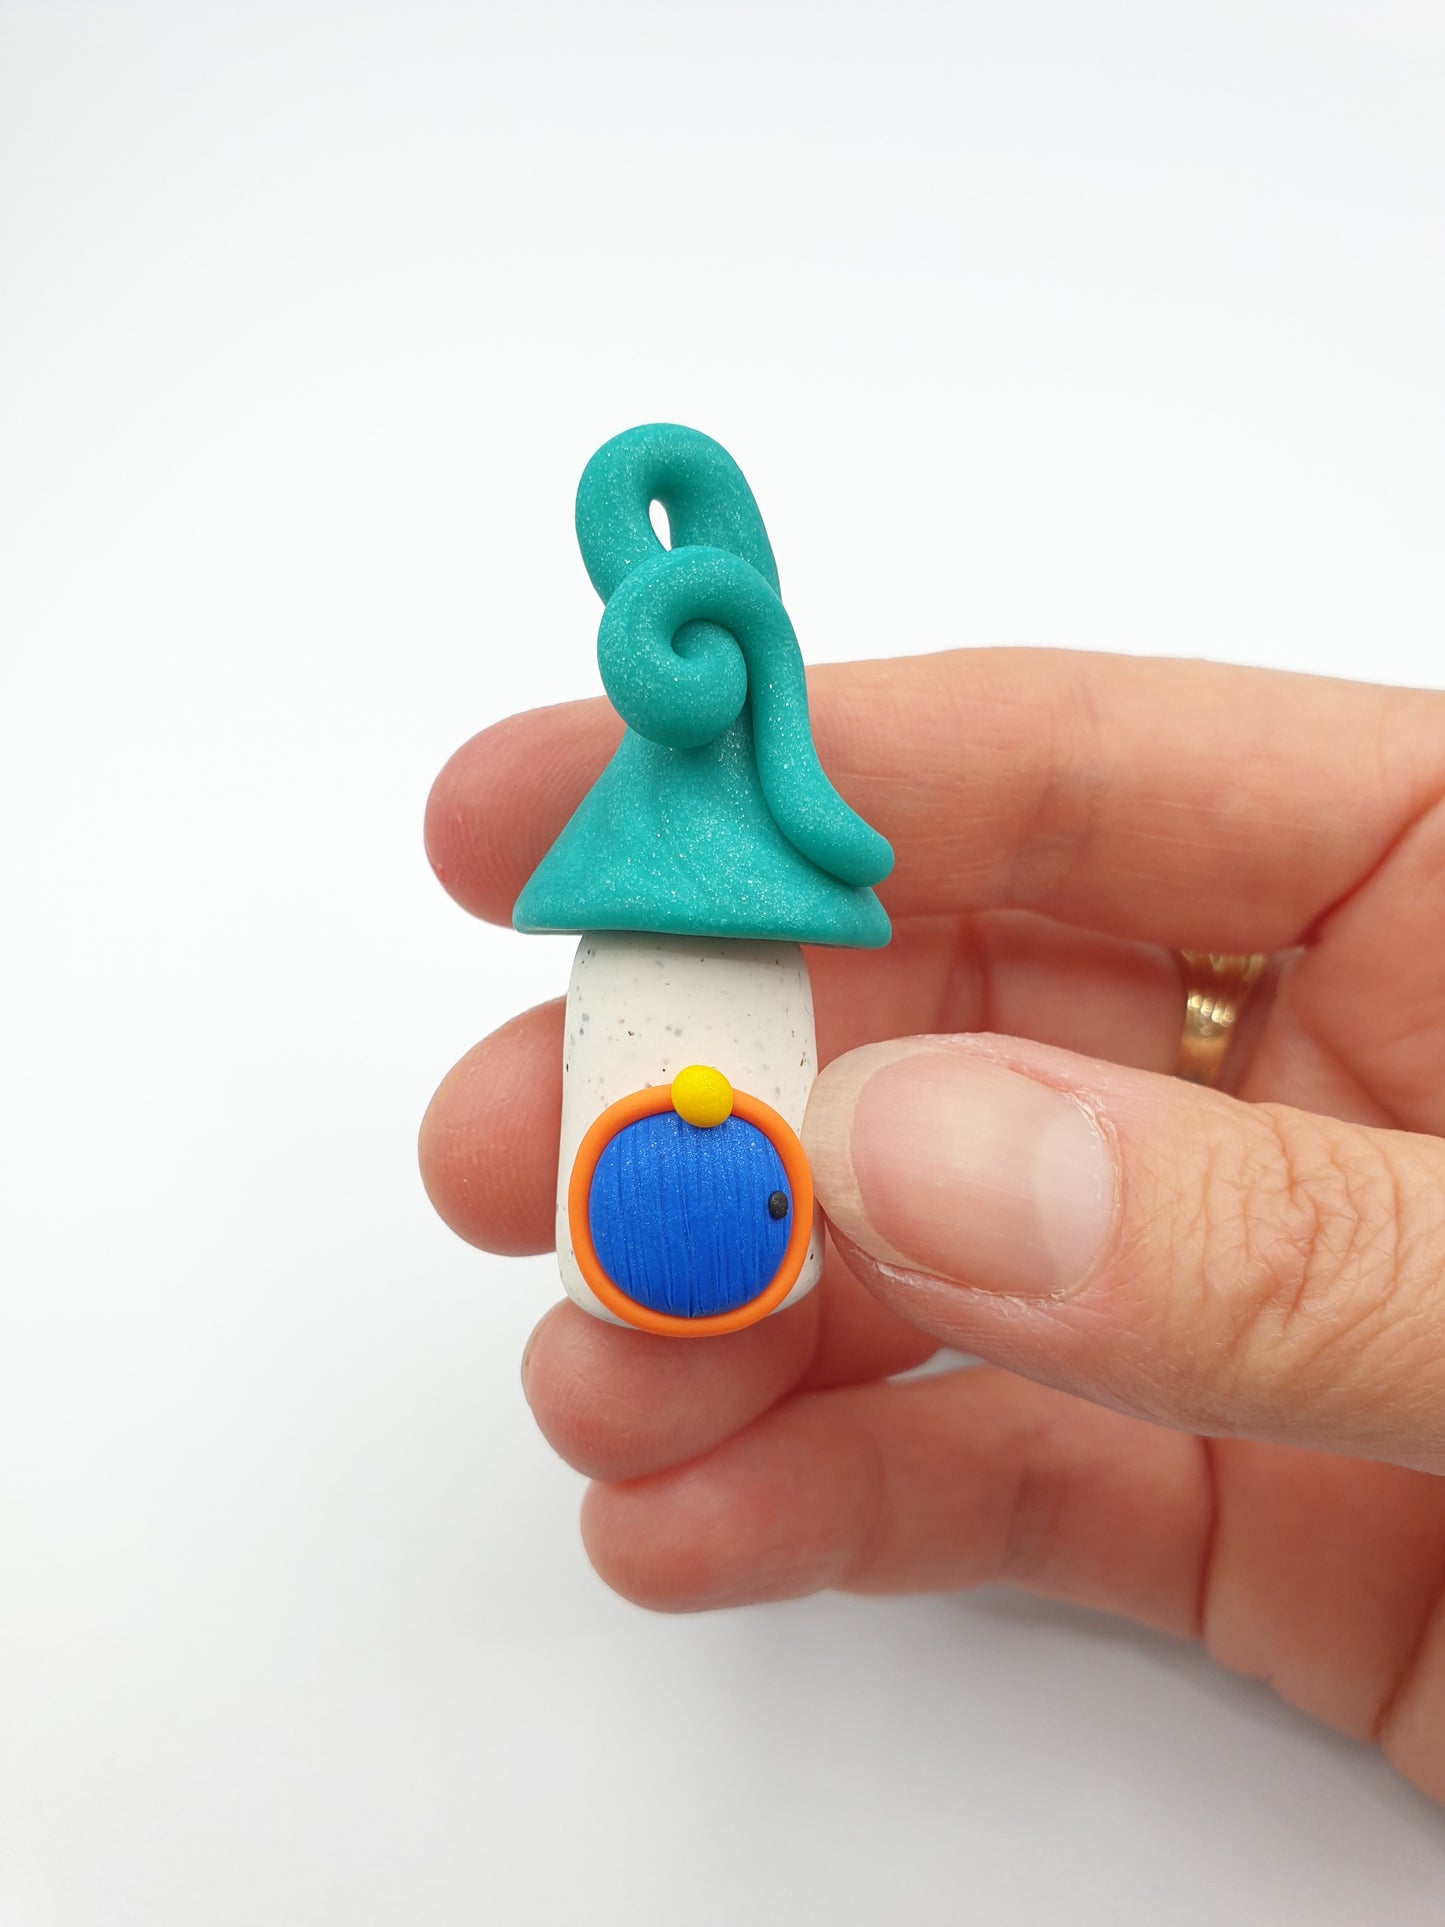 Miniature garden kit - turquoise blue